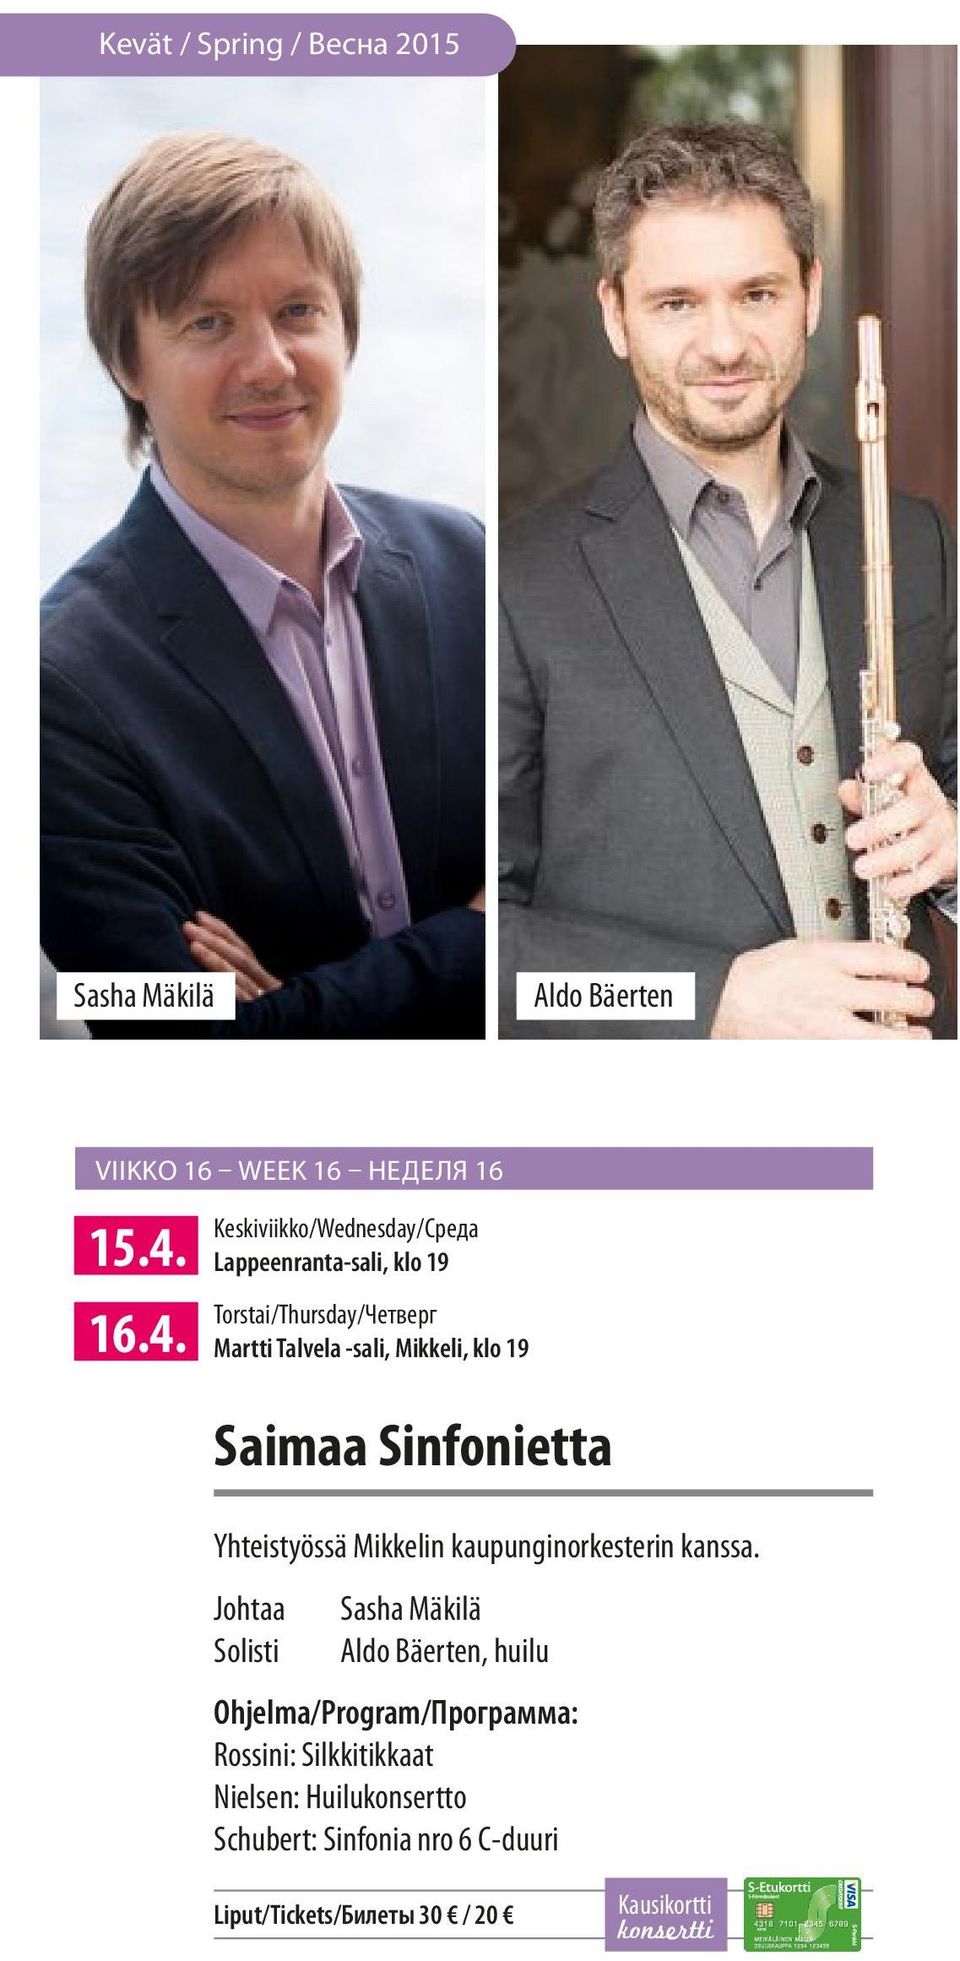 19 Saimaa Sinfonietta Yhteistyössä Mikkelin kaupunginorkesterin kanssa.